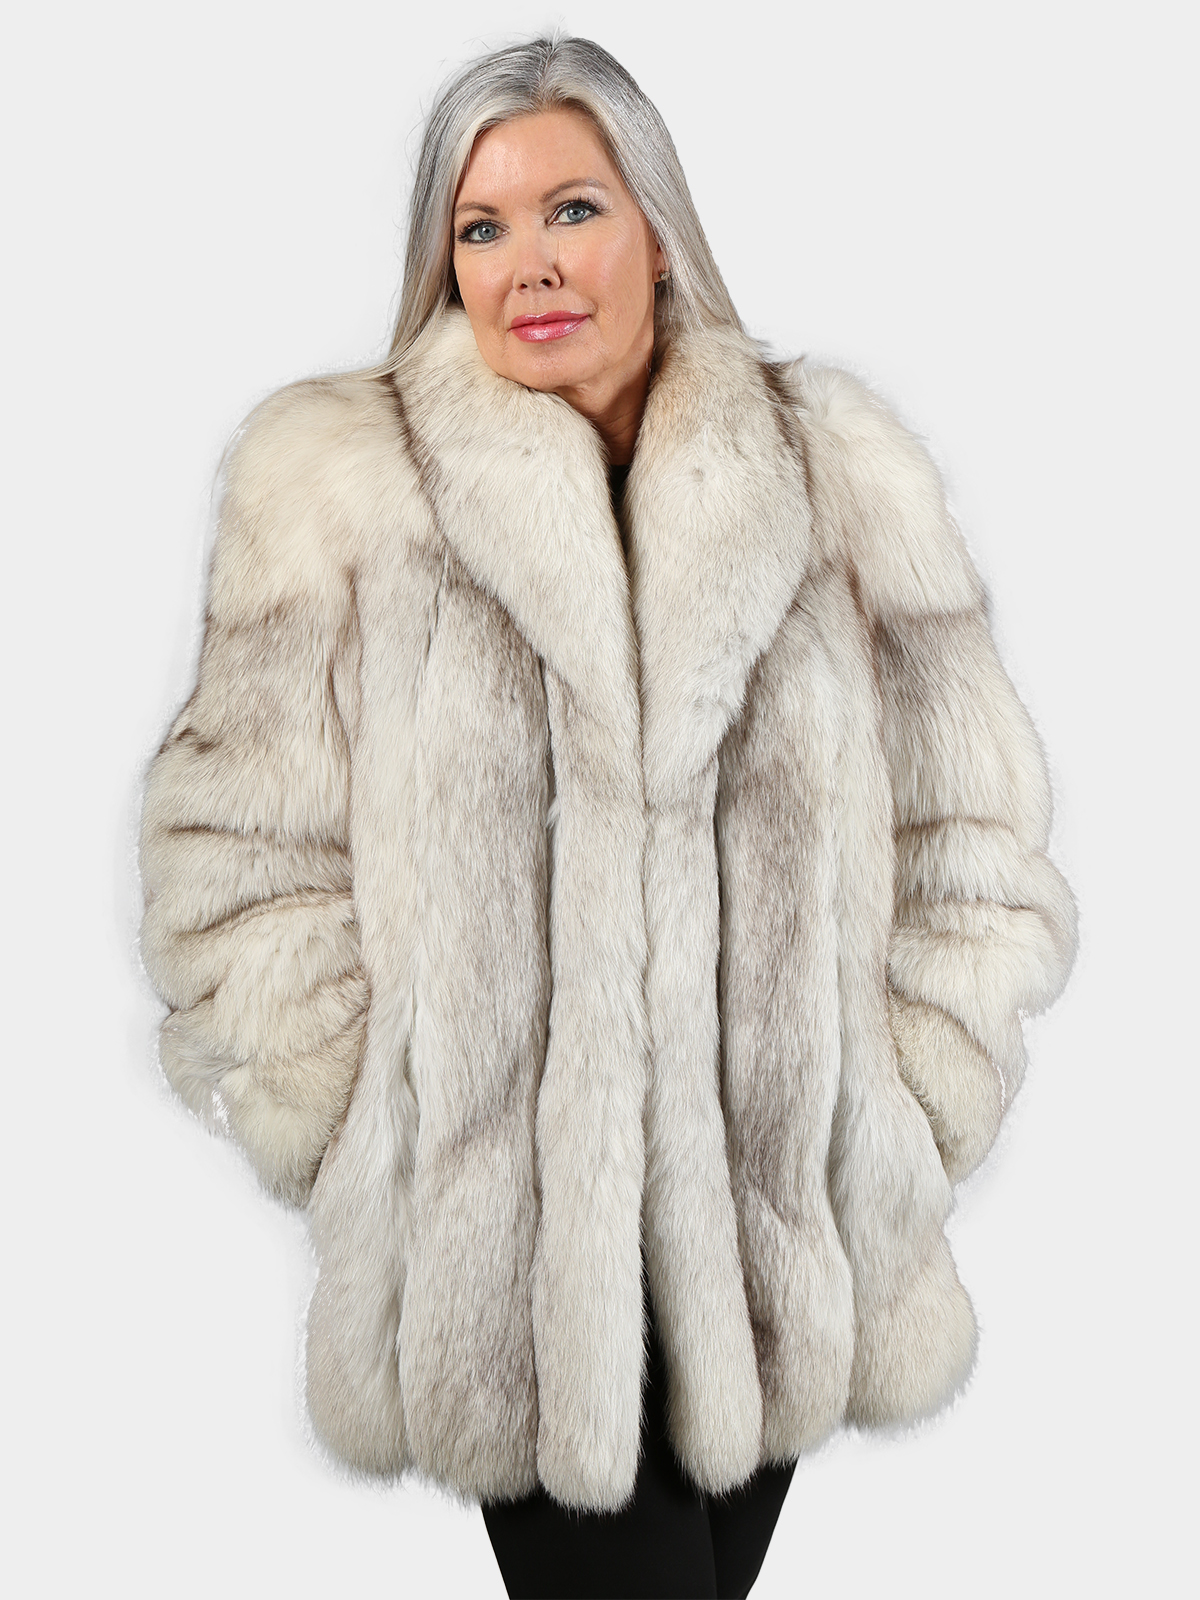 Woman's Natural Silver Fox and Royal Blue Fox Fur Jacket